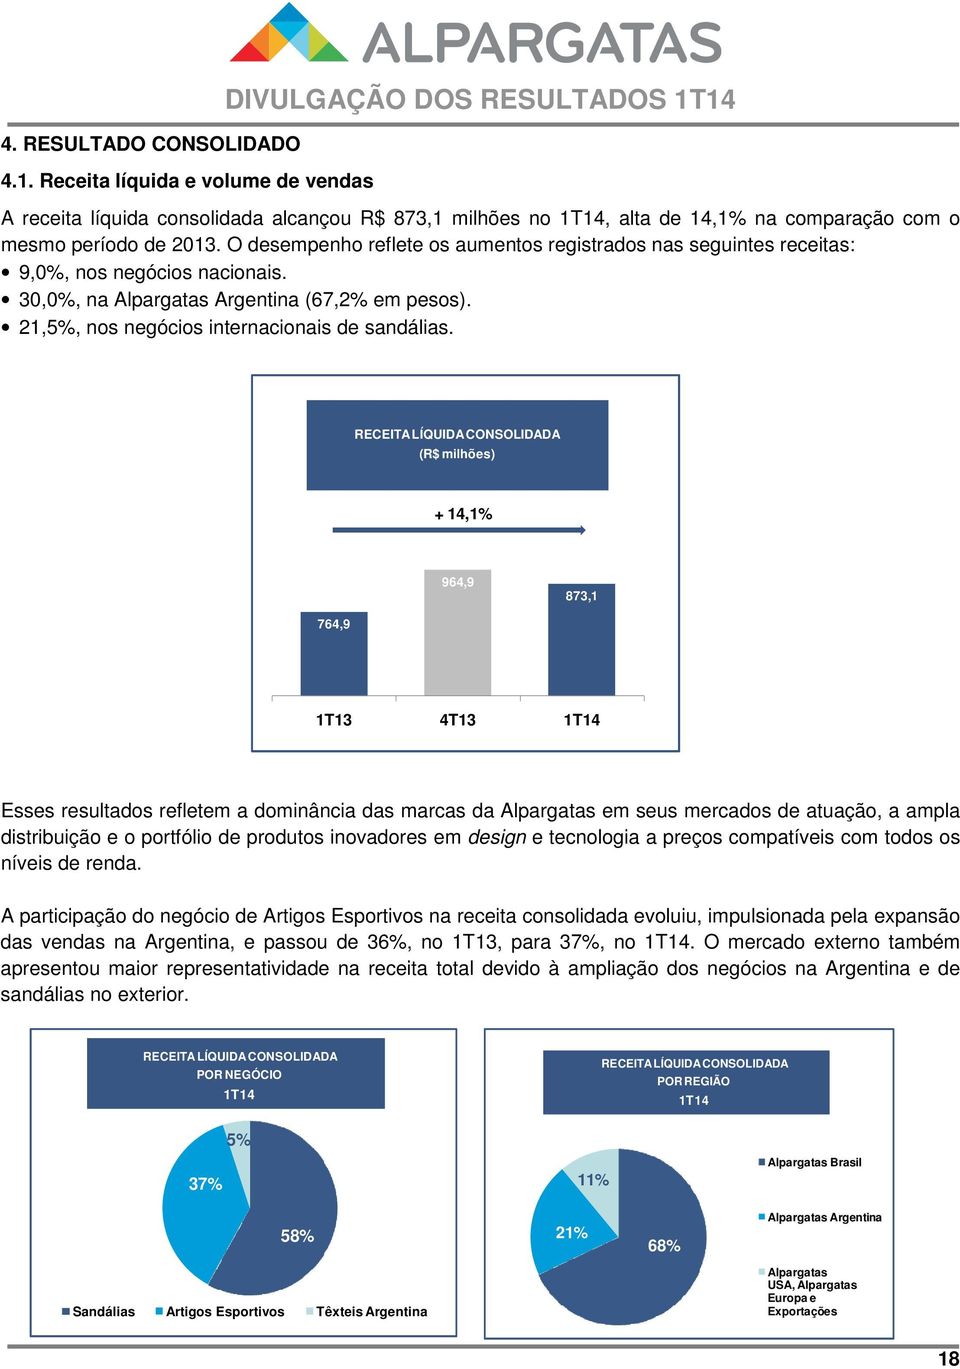 O desempenho reflete os aumentos registrados nas seguintes receitas: 9,0%, nos negócios nacionais. 30,0%, na Alpargatas Argentina (67,2% em pesos). 21,5%, nos negócios internacionais de sandálias.